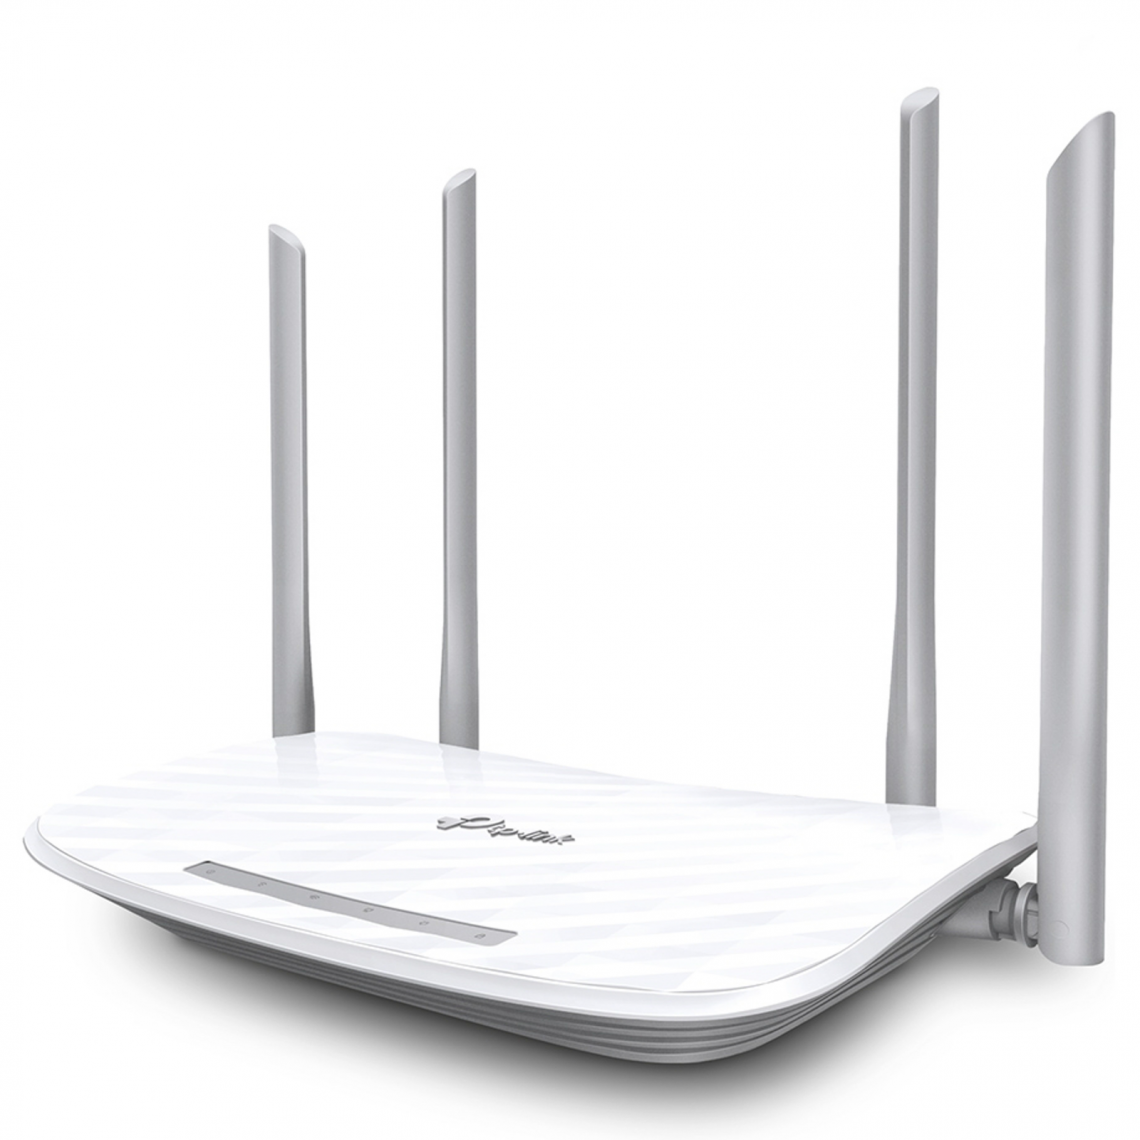 TP-LINK - Routeur Gigabit Wi-Fi Double Bande Archer C5 AC1200 de TP-Link - Modem / Routeur / Points d'accès